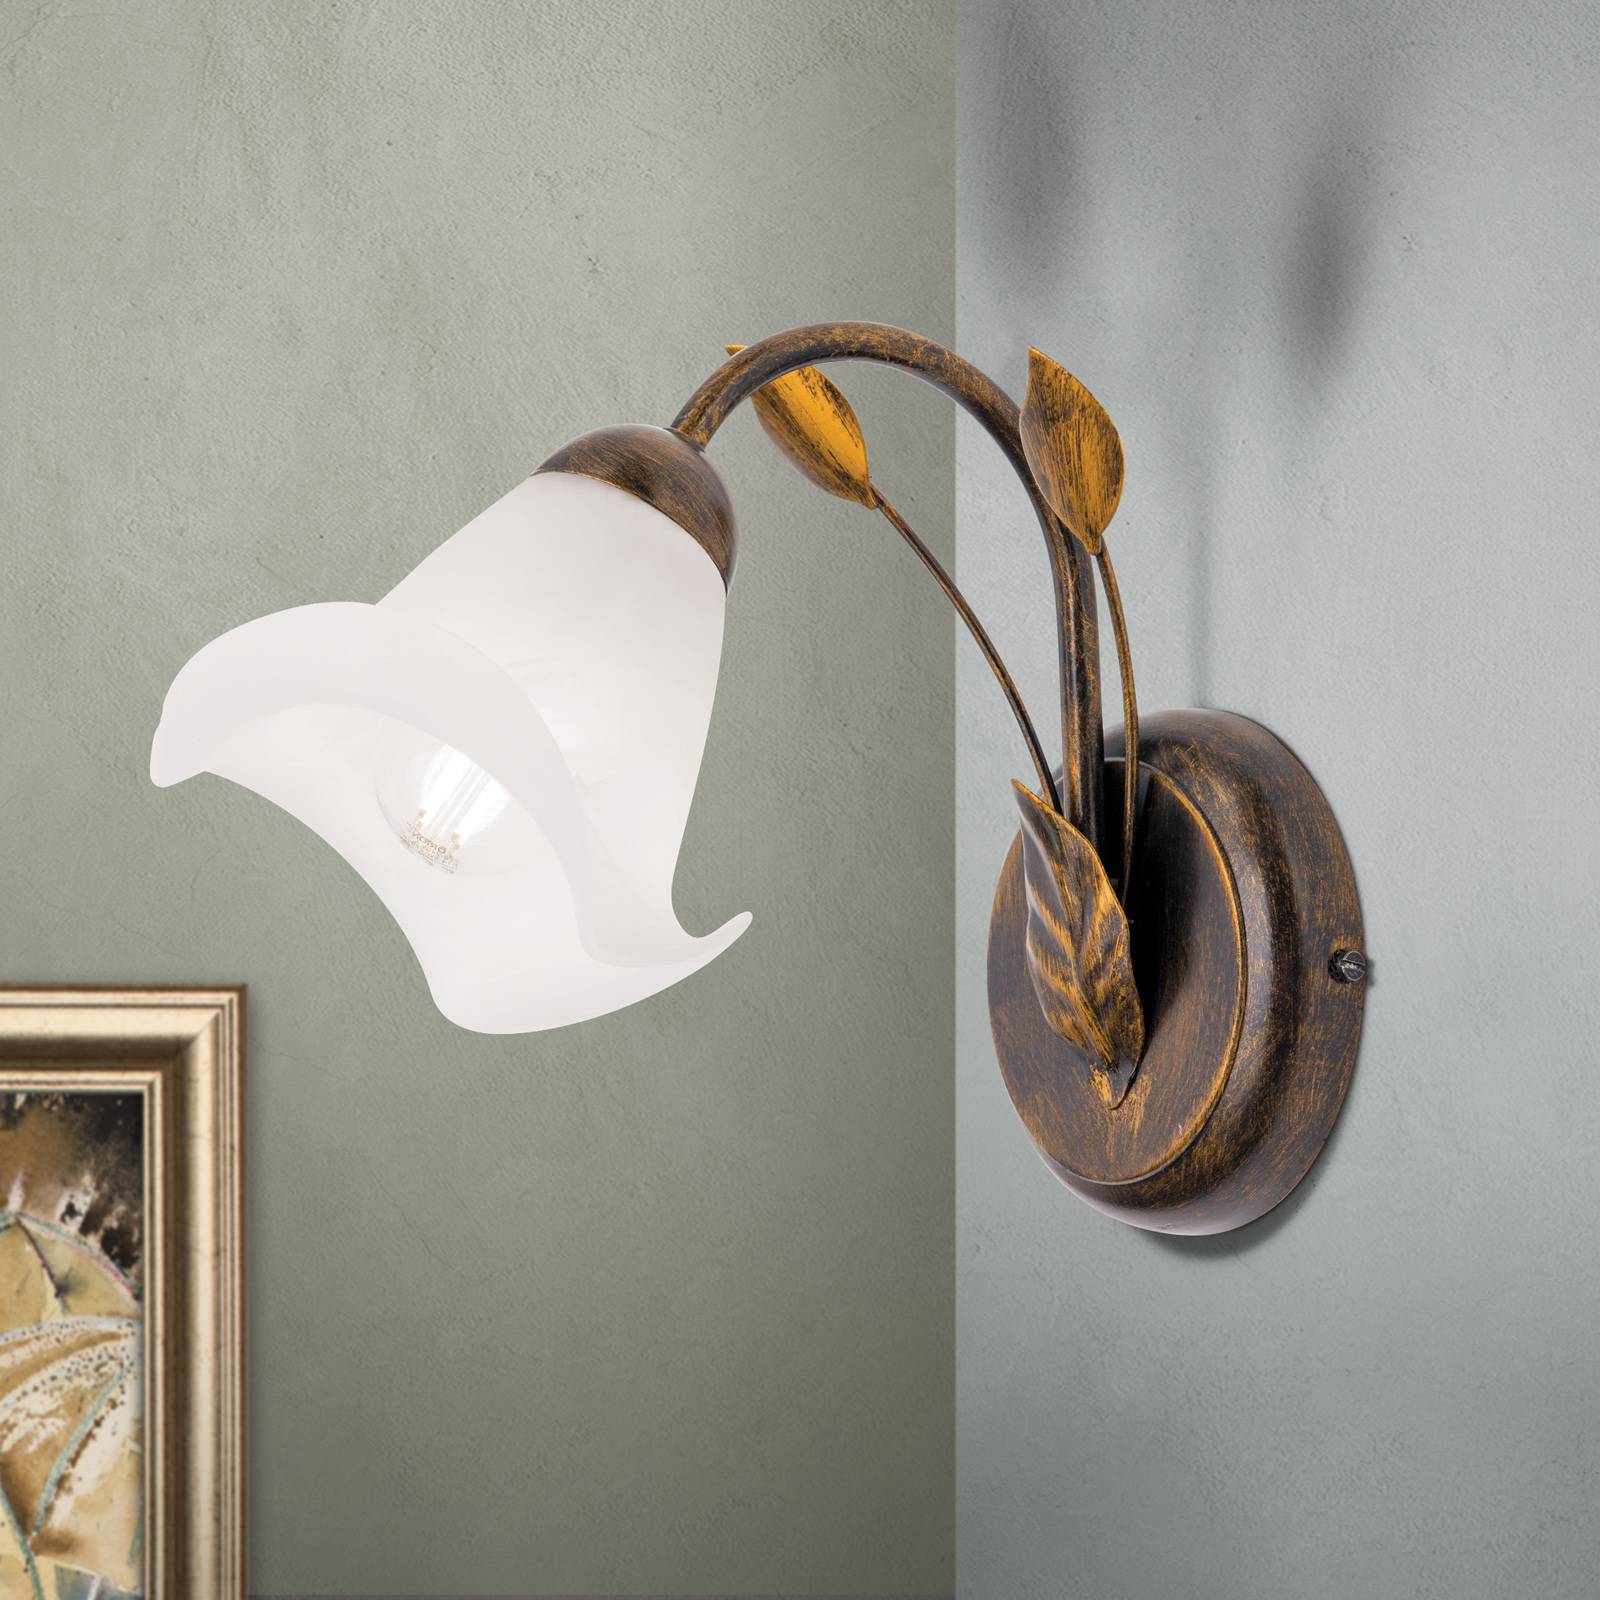 Sisi væglampe florentinsk stil antikt look